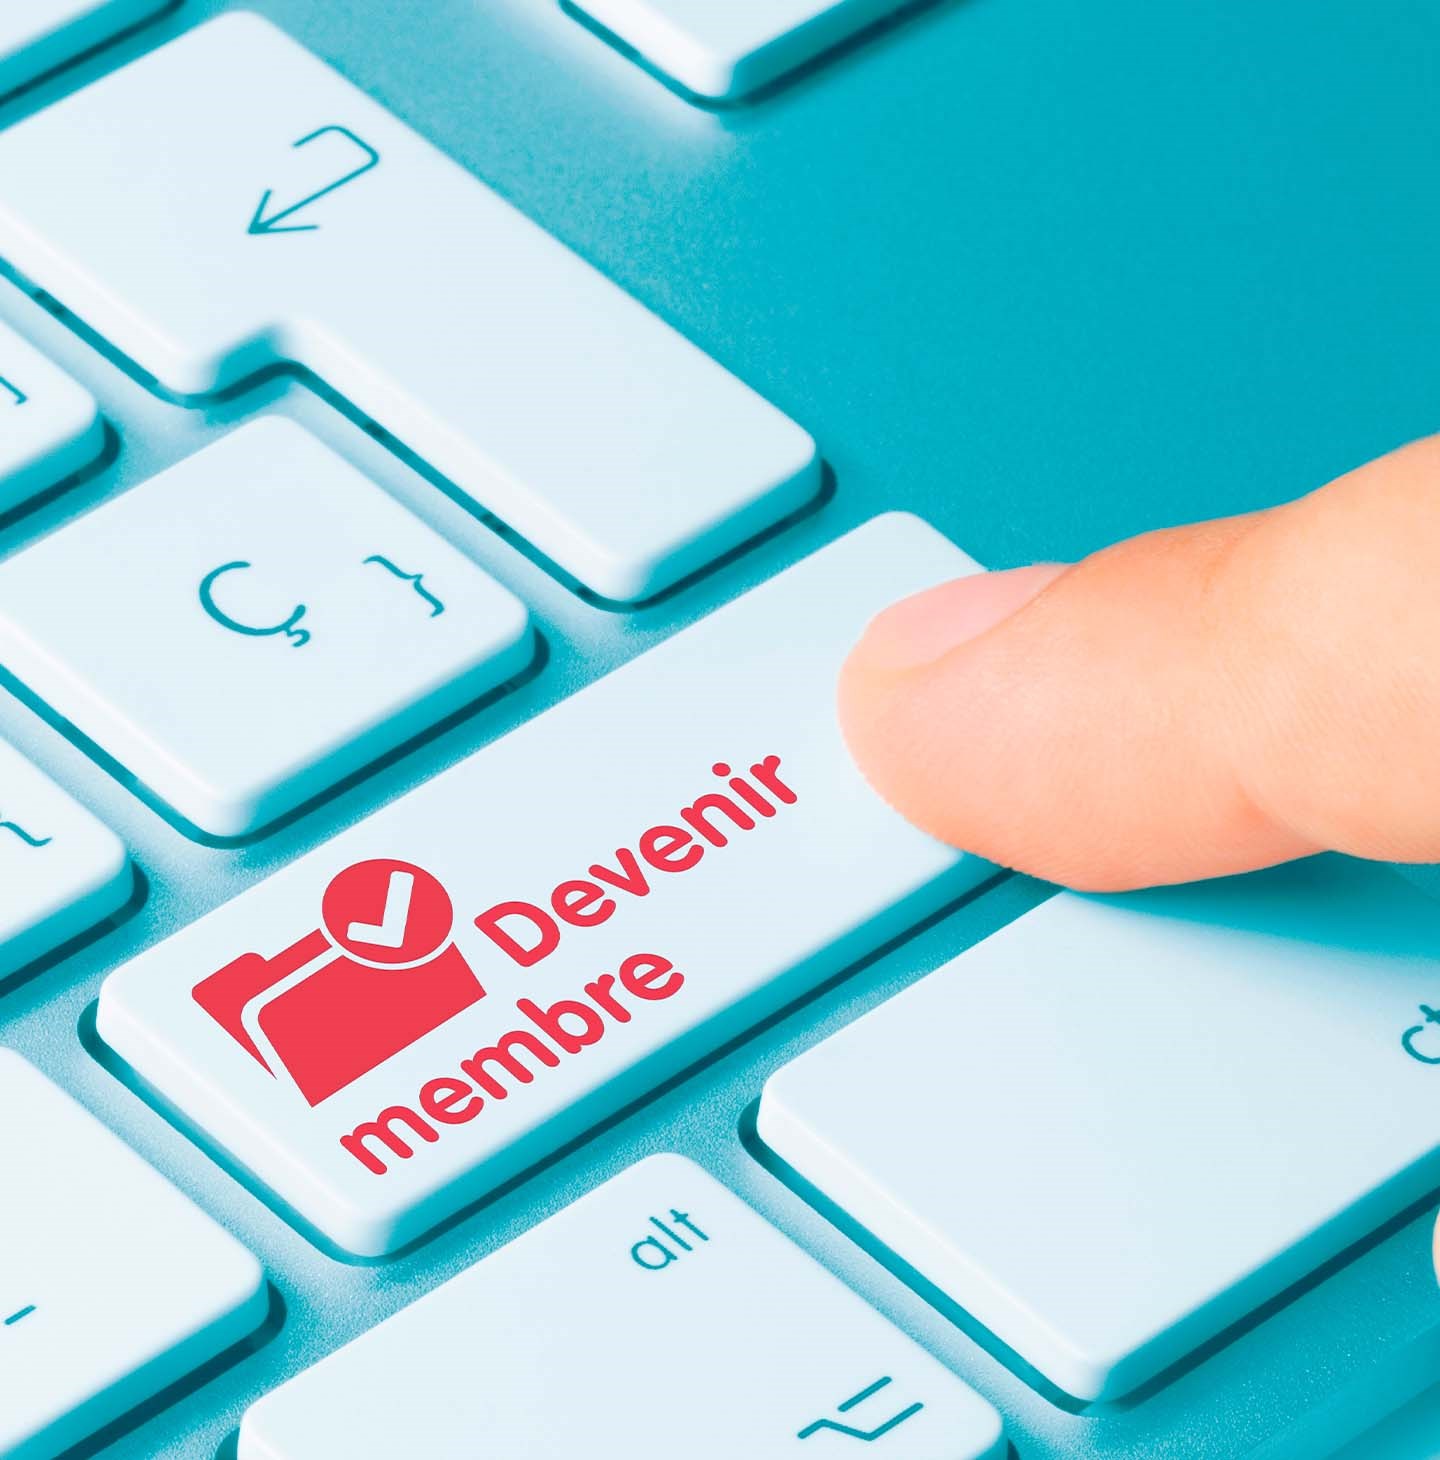 Partie droite d'un clavier d'ordinateur avec un doigt qui va appuyer sur la touche devenir membre écrit en rouge.